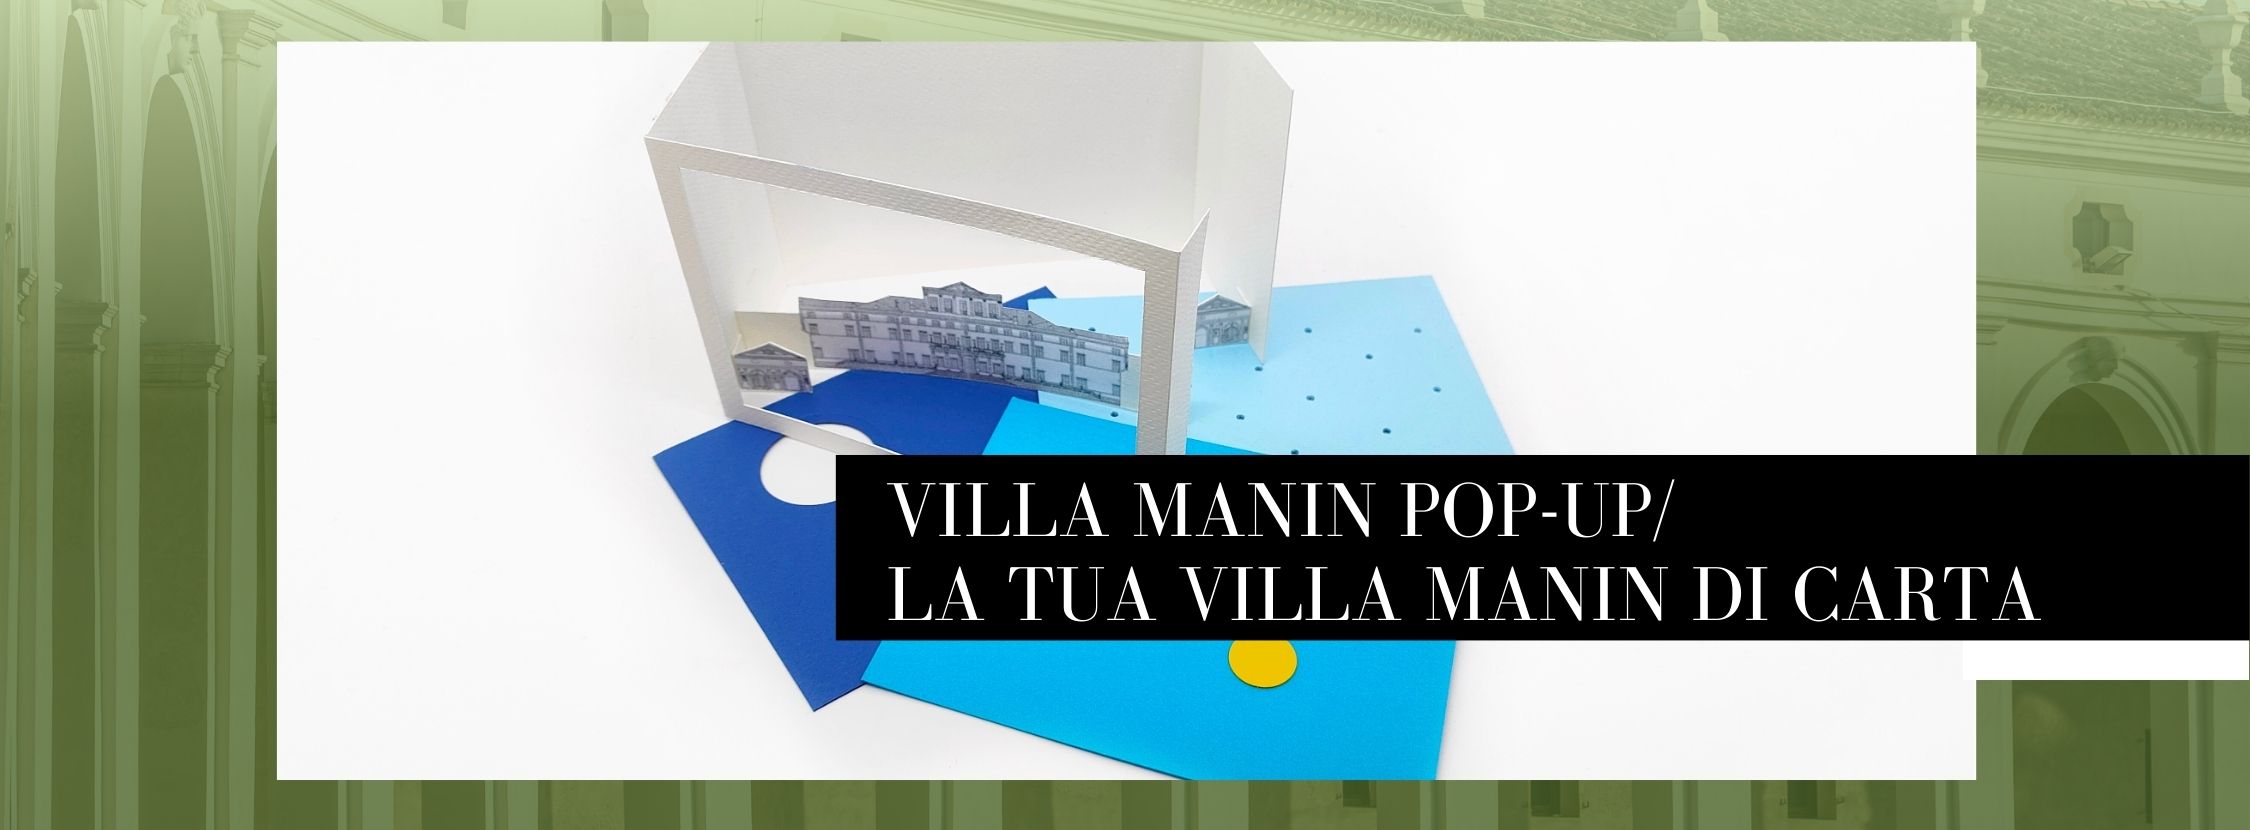 Villa Manin pop-up e La tua Villa Manin di carta